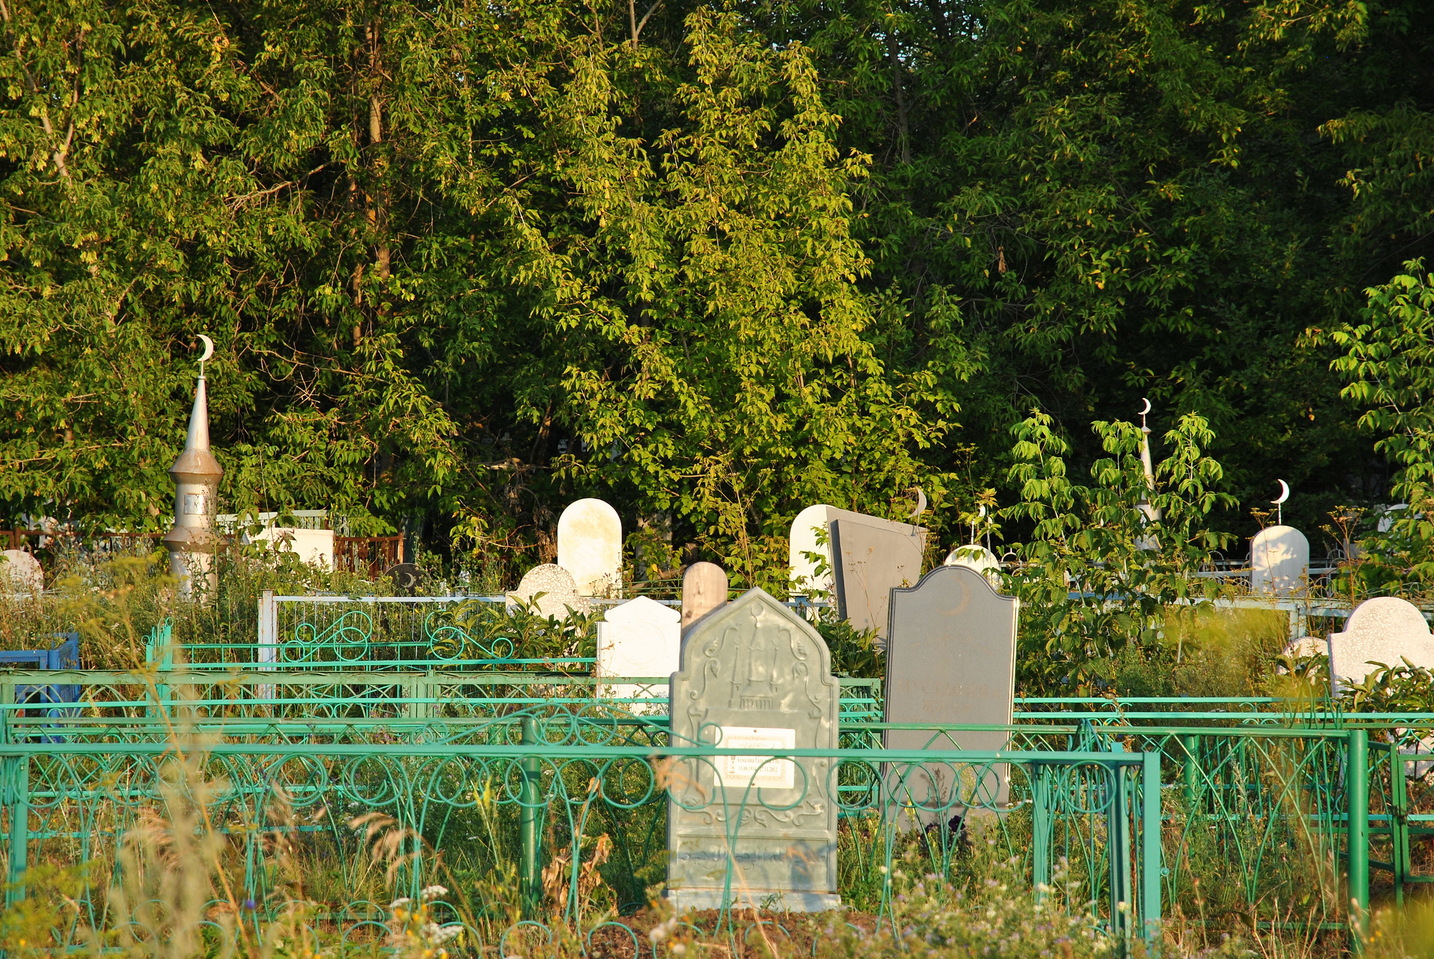 Татарское кладбище